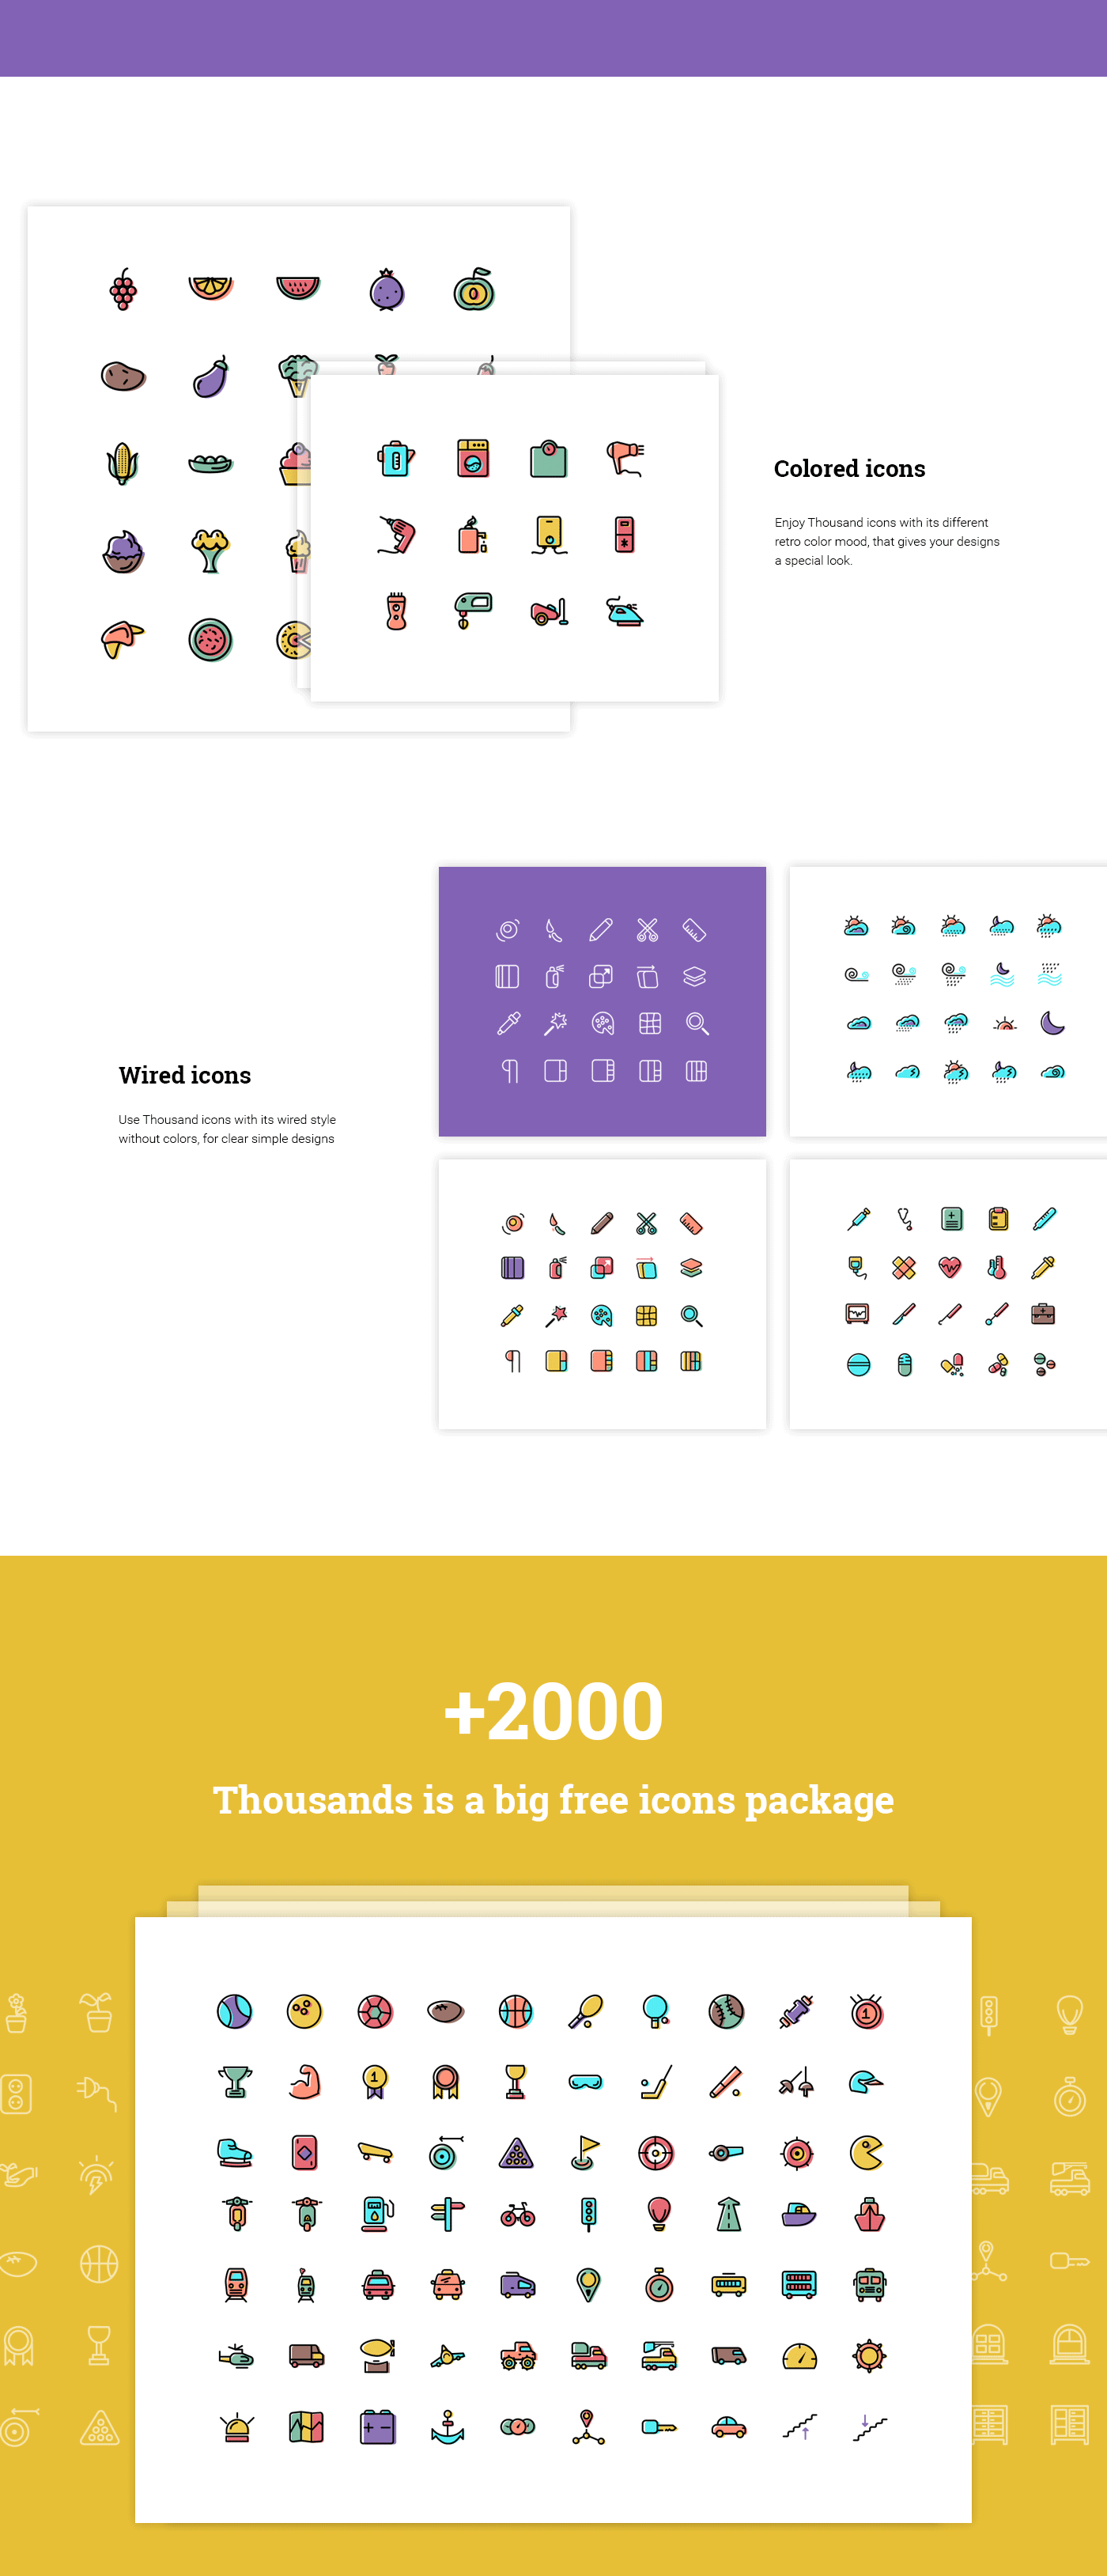 2000个各类专业图标大合集 [AI,PSD,Sketch,SVG]插图(1)